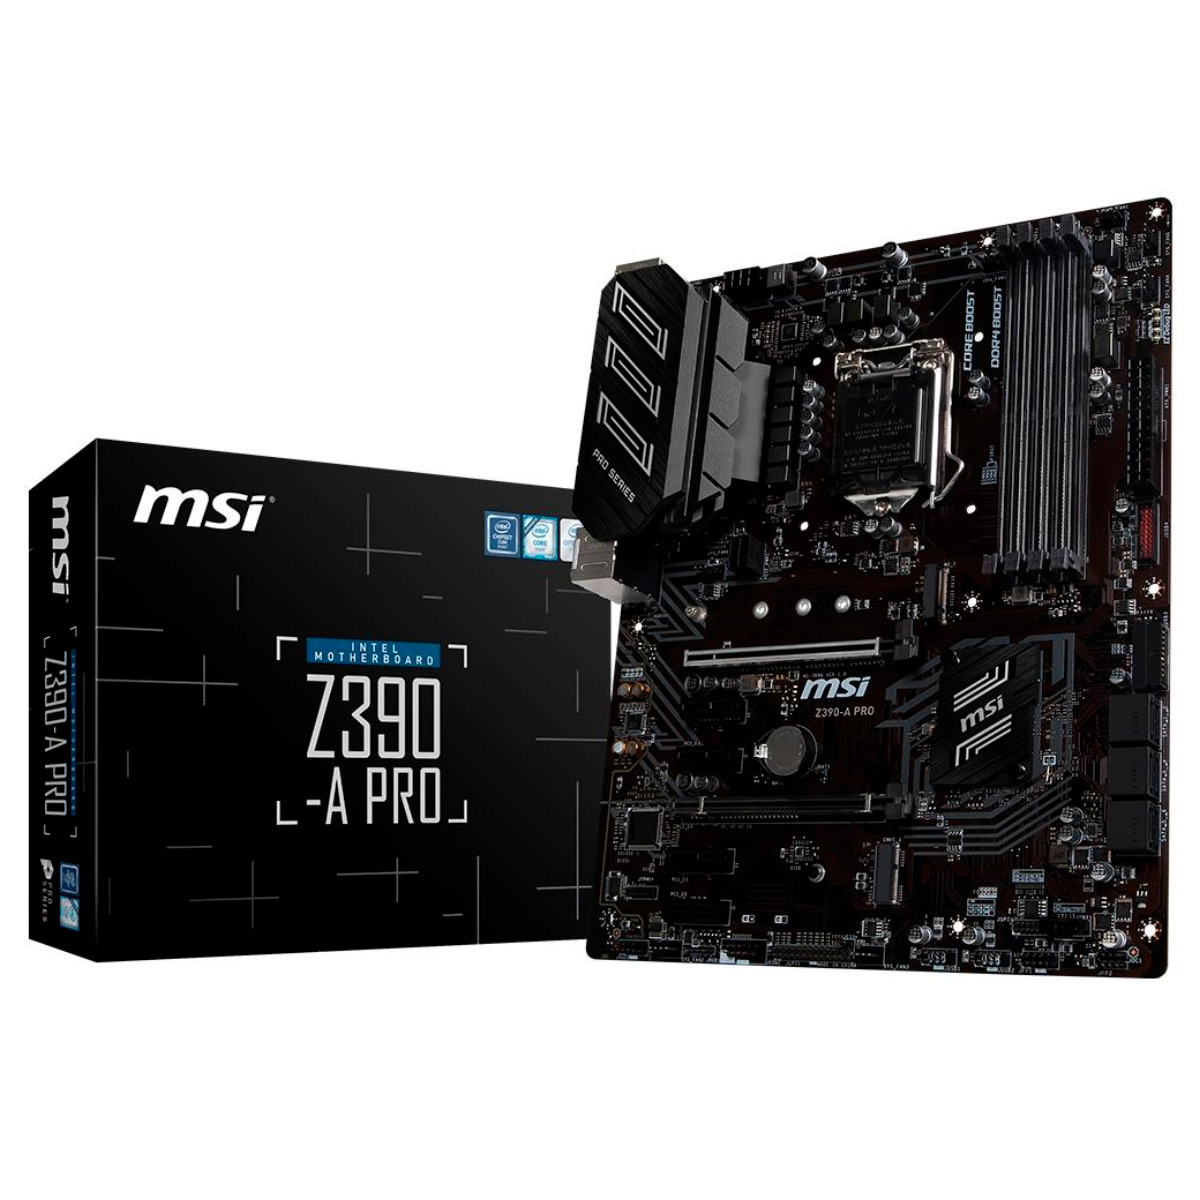 MSI Z390-A PRO (LGA 1151 - DDR4 4400 O.C) - Chipset Intel Z390 - 8ª e 9ª Geração - USB 3.1 Tipo C - Slot M.2 - ATX